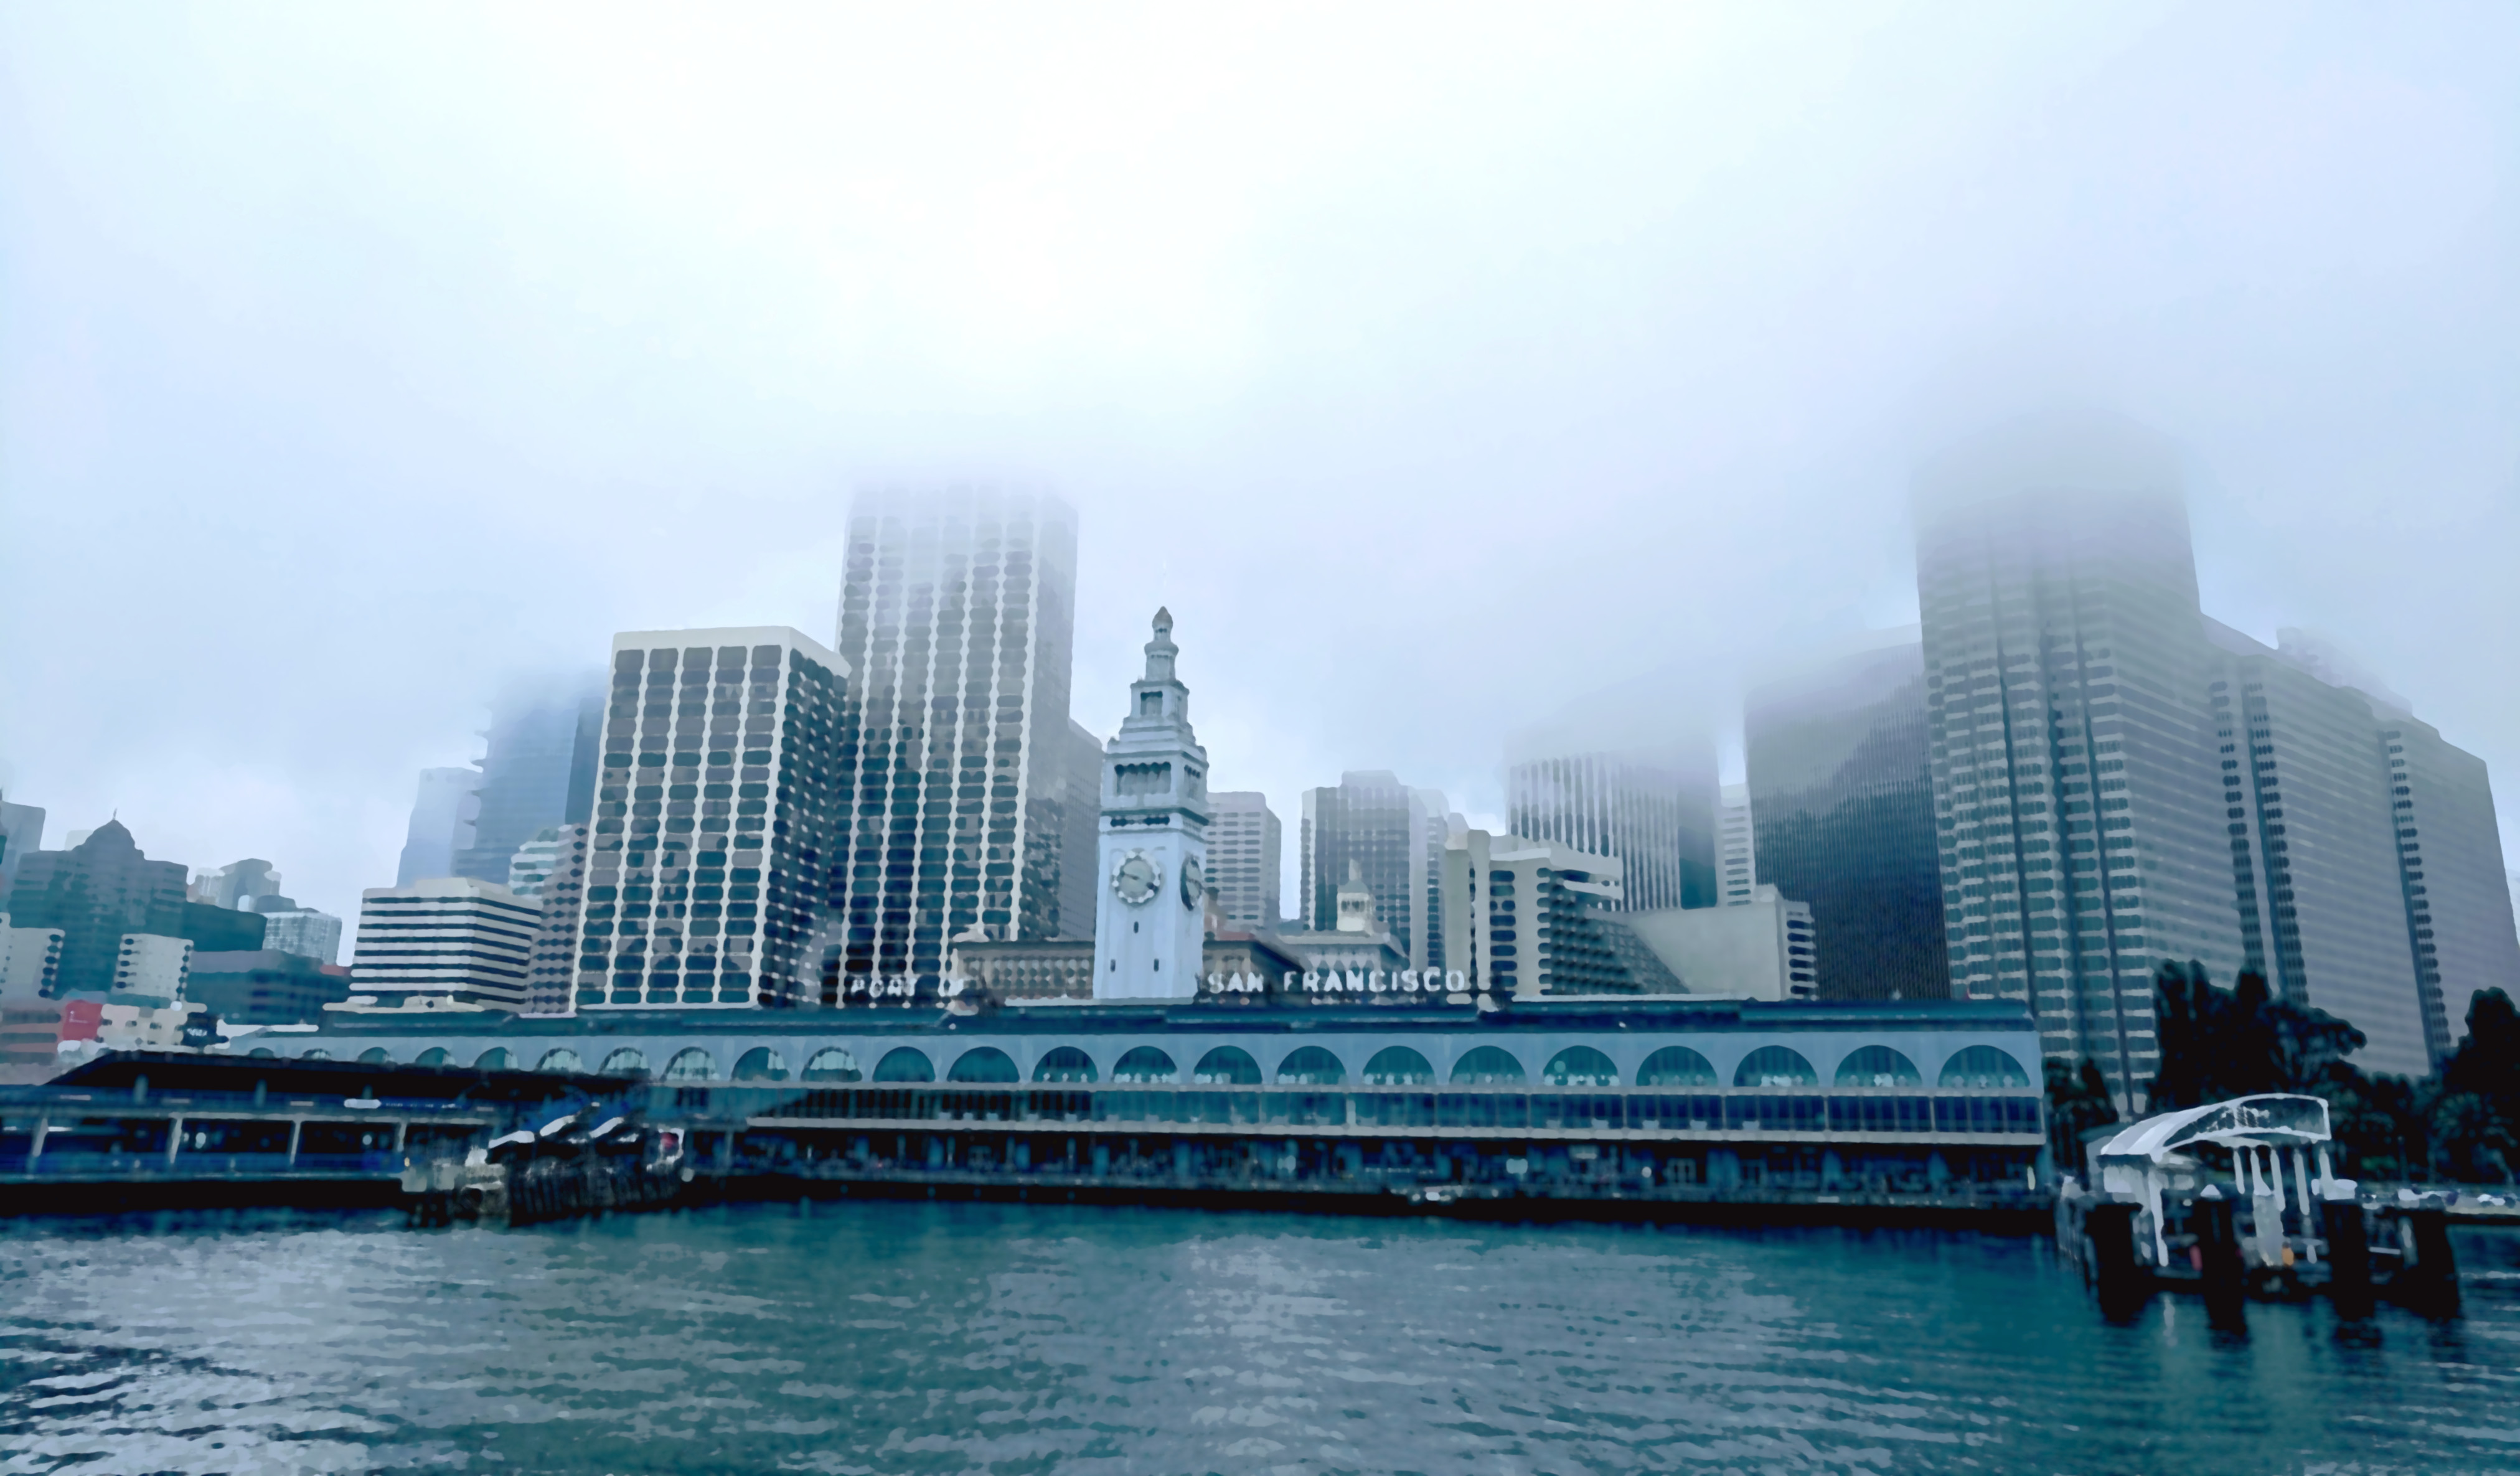 San Francisco in fog, July 2019.